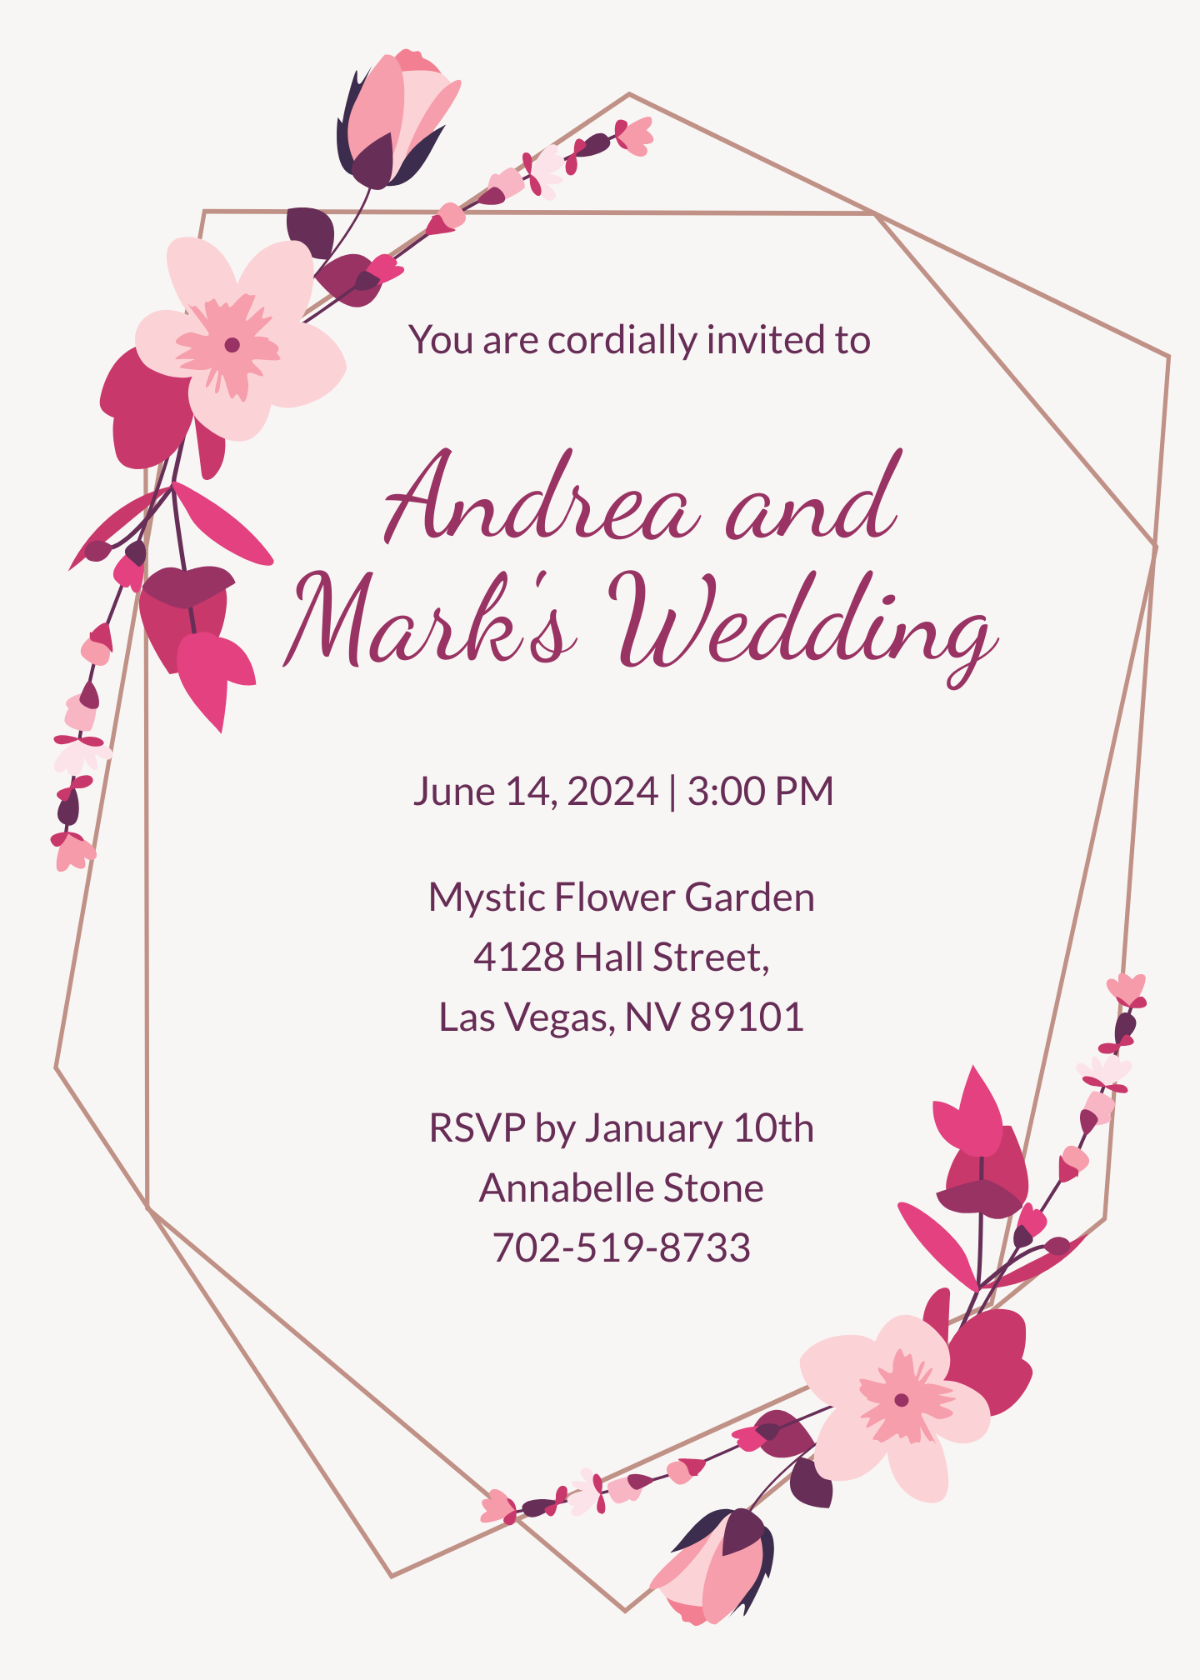 Sample Wedding Invitation Template